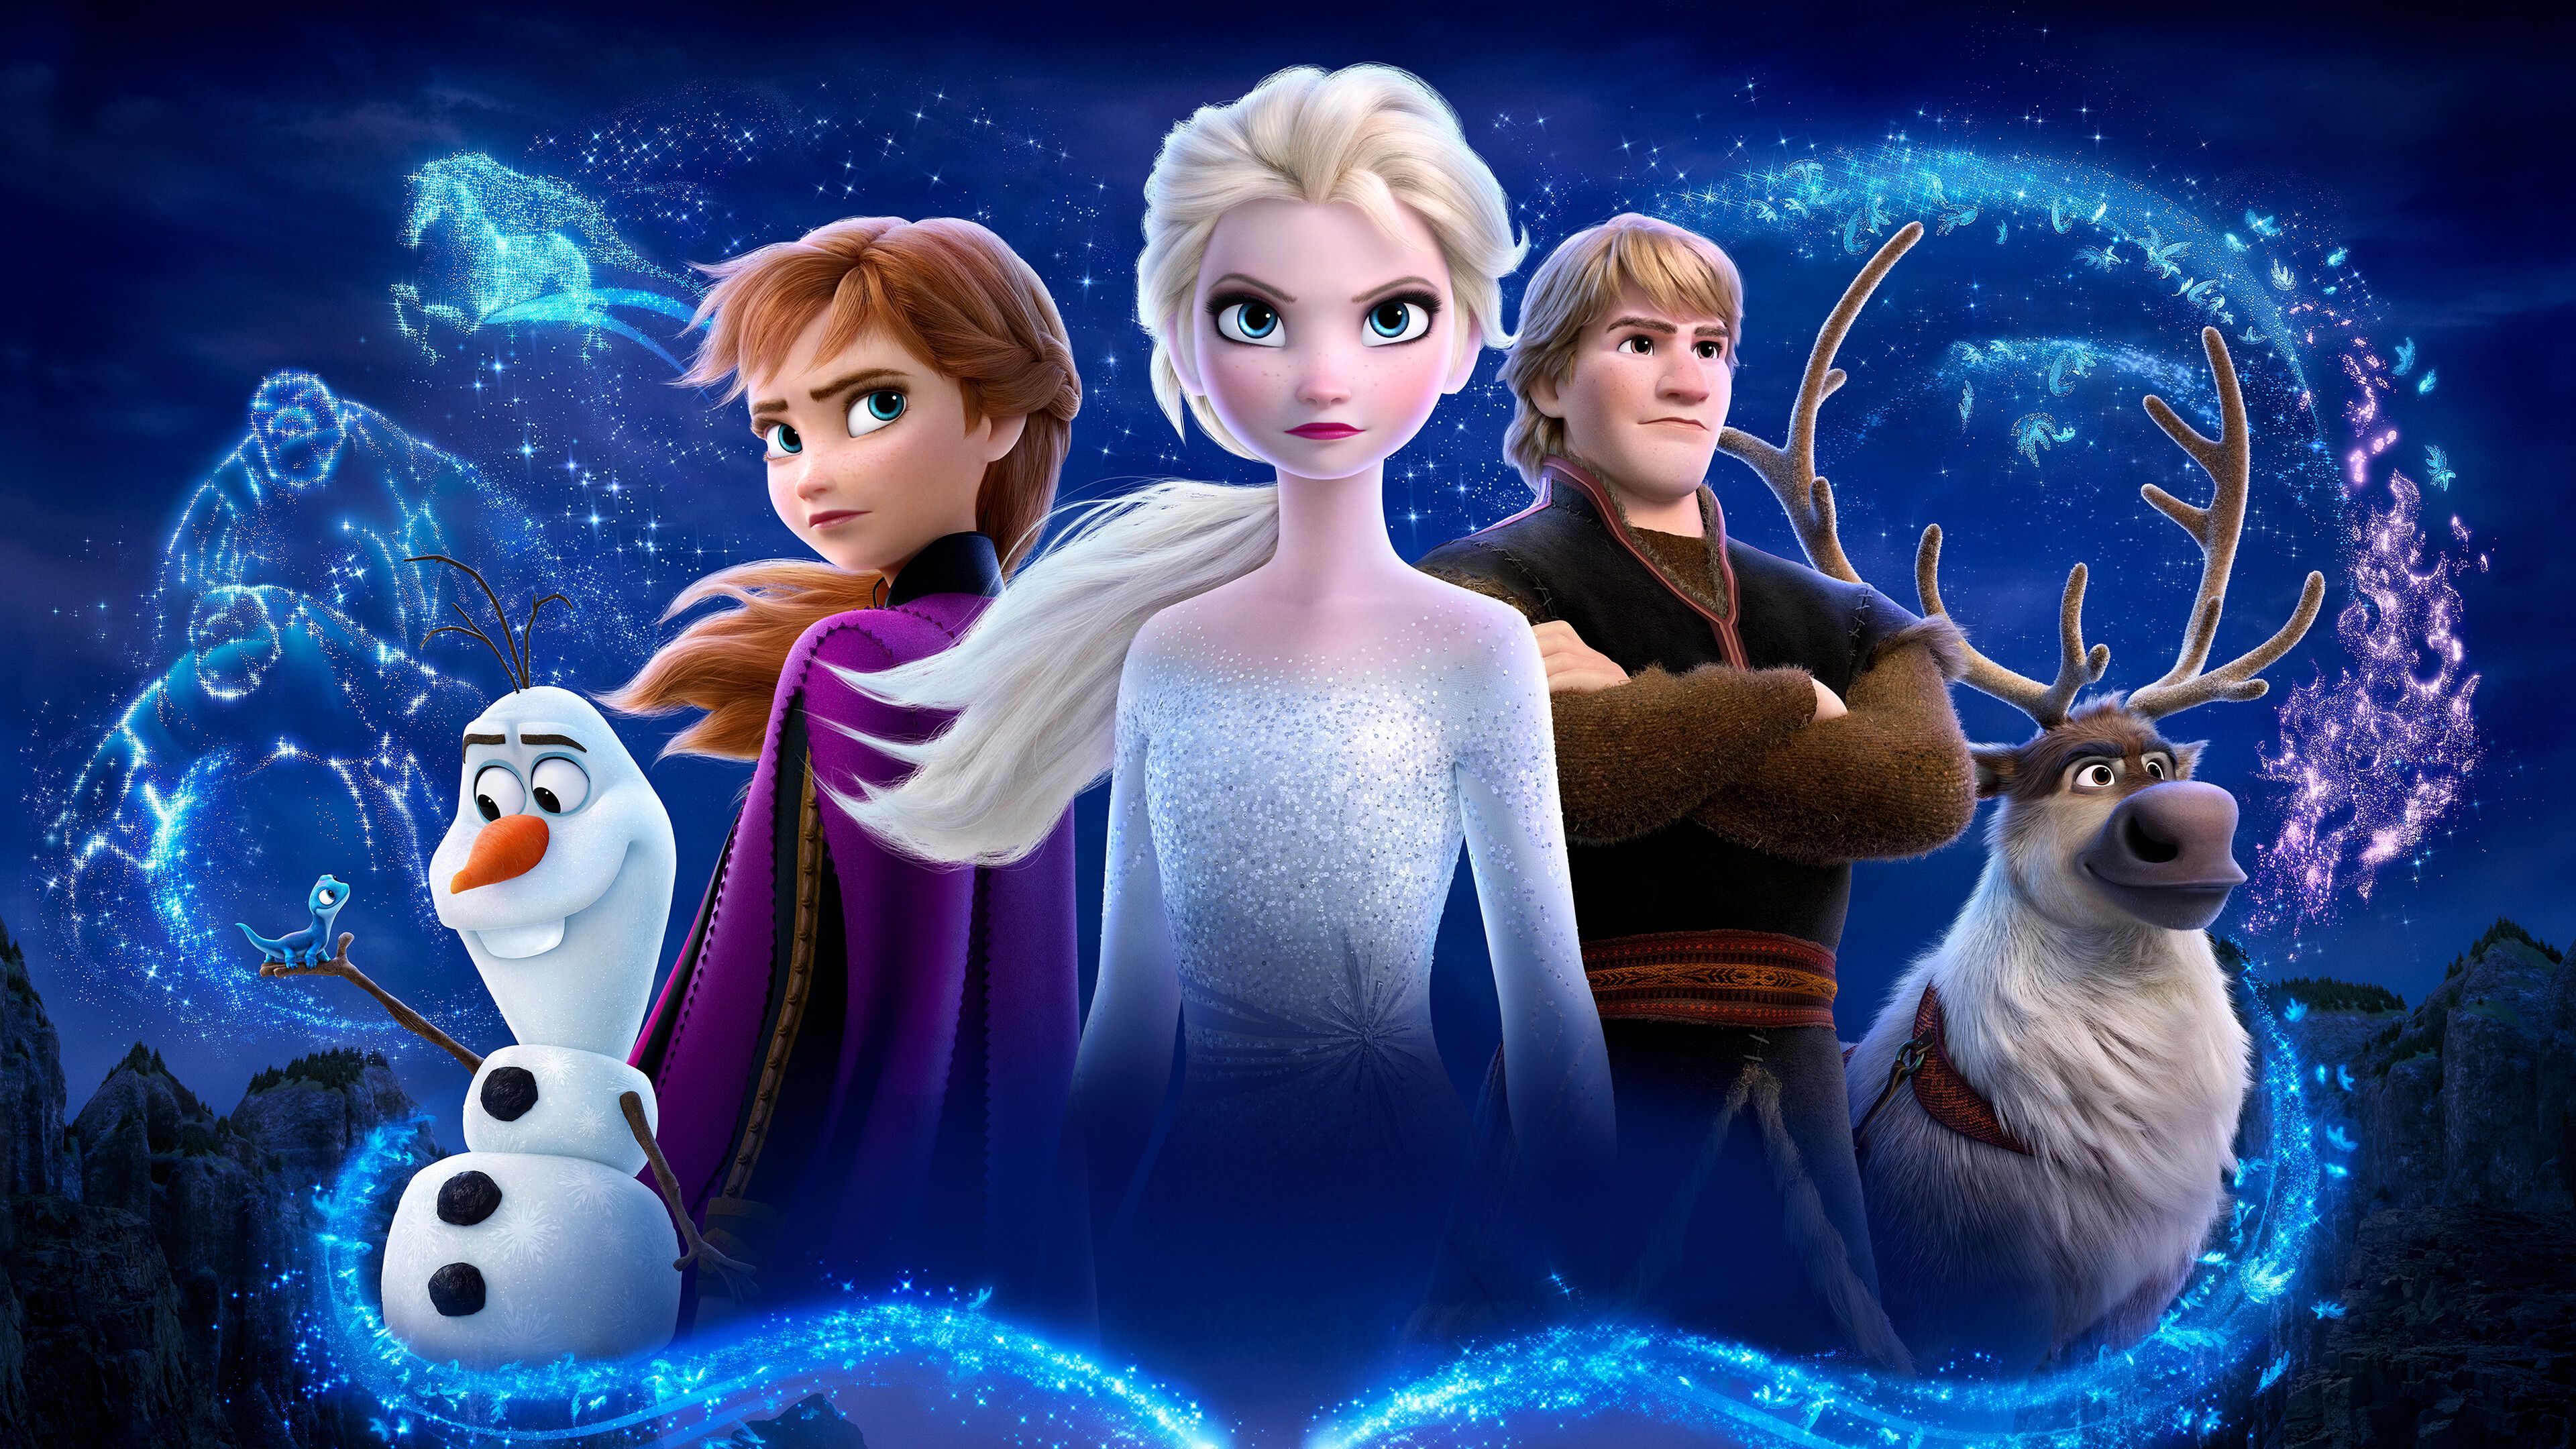 Frozen 2 Characters UHD 4K Wallpaper